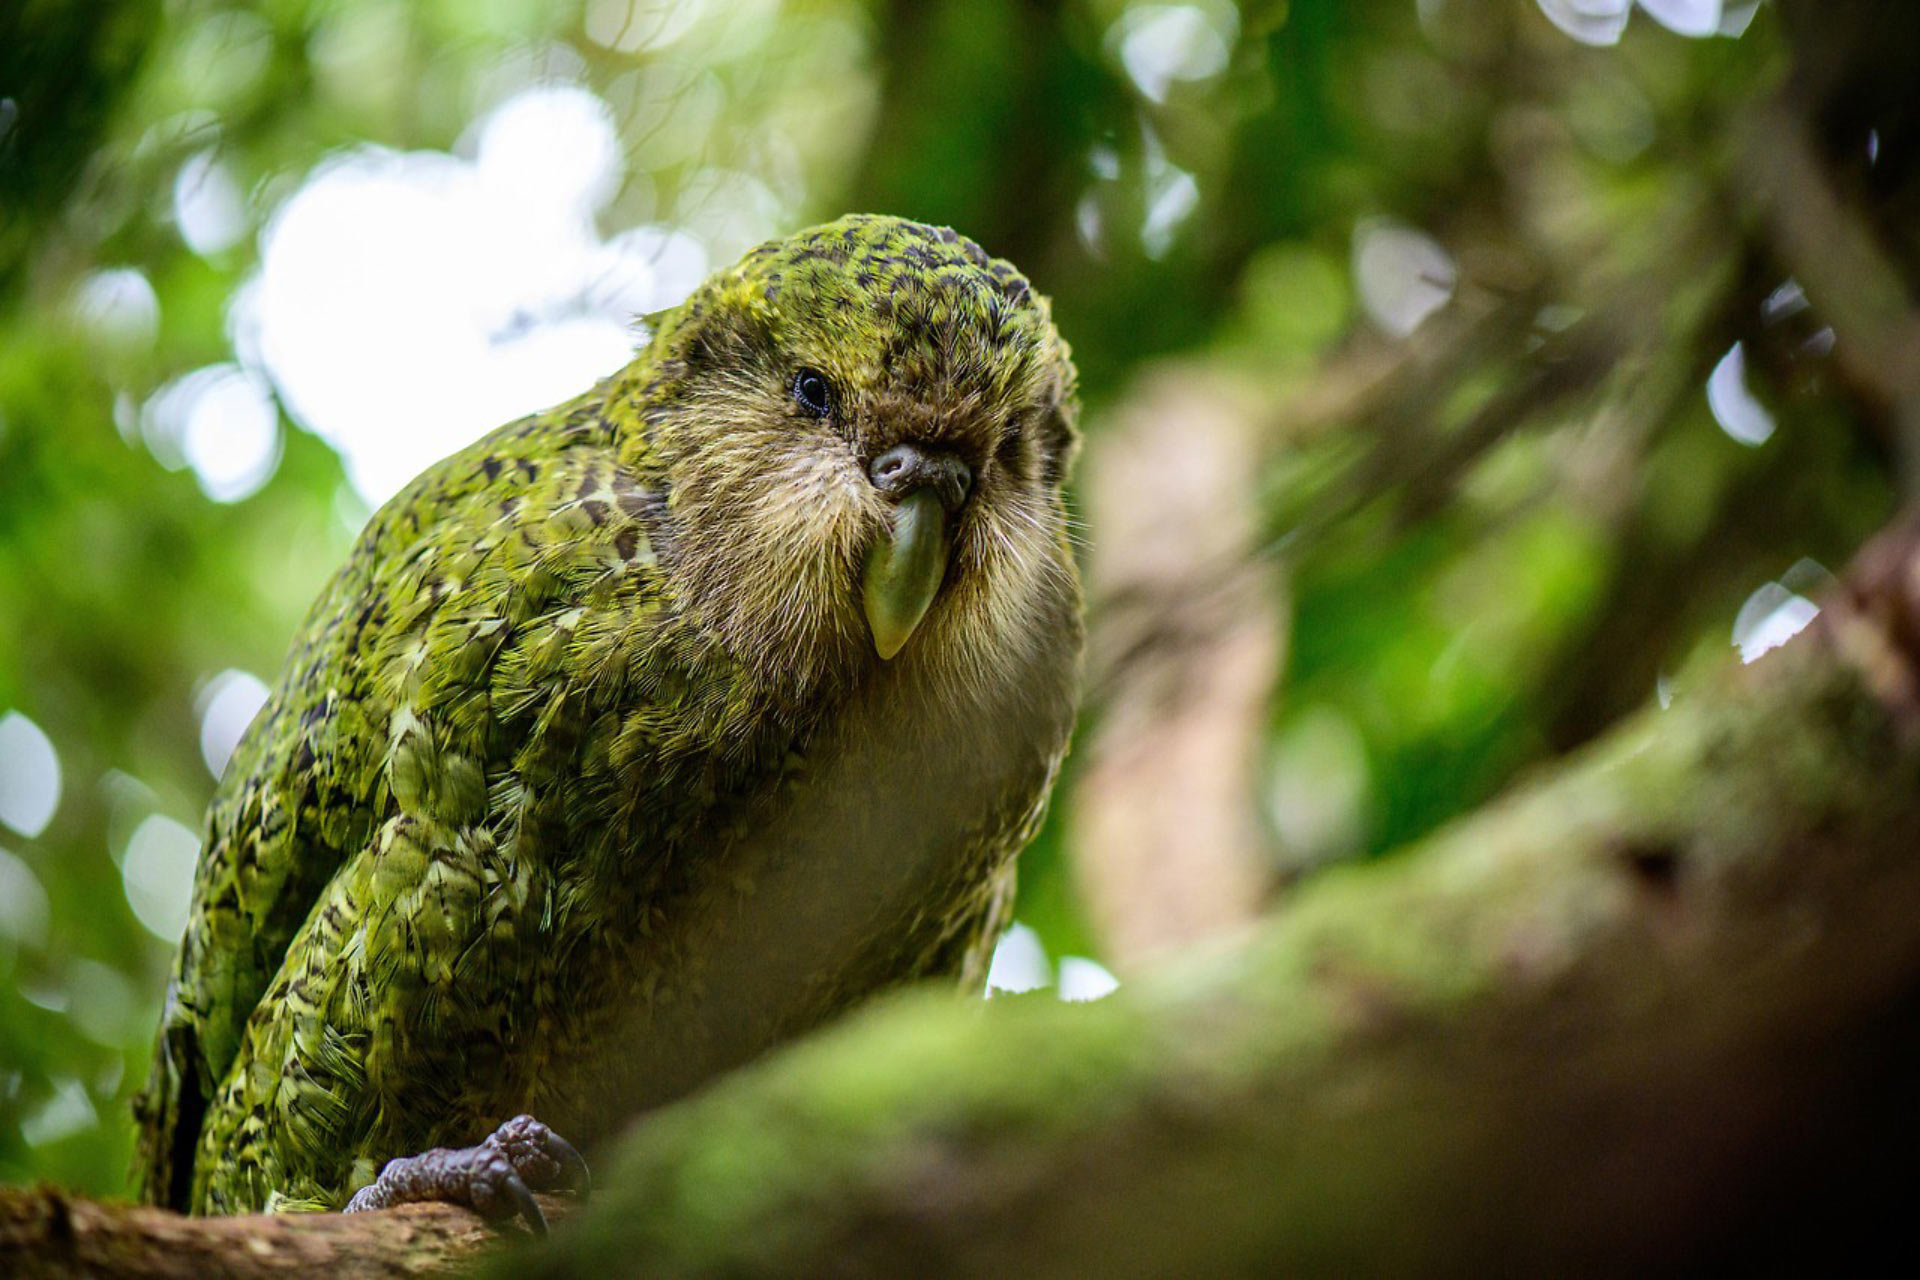 Совиный попугай (какапо) - особенности нелетающего попугая, среда обитания, размножение, фото